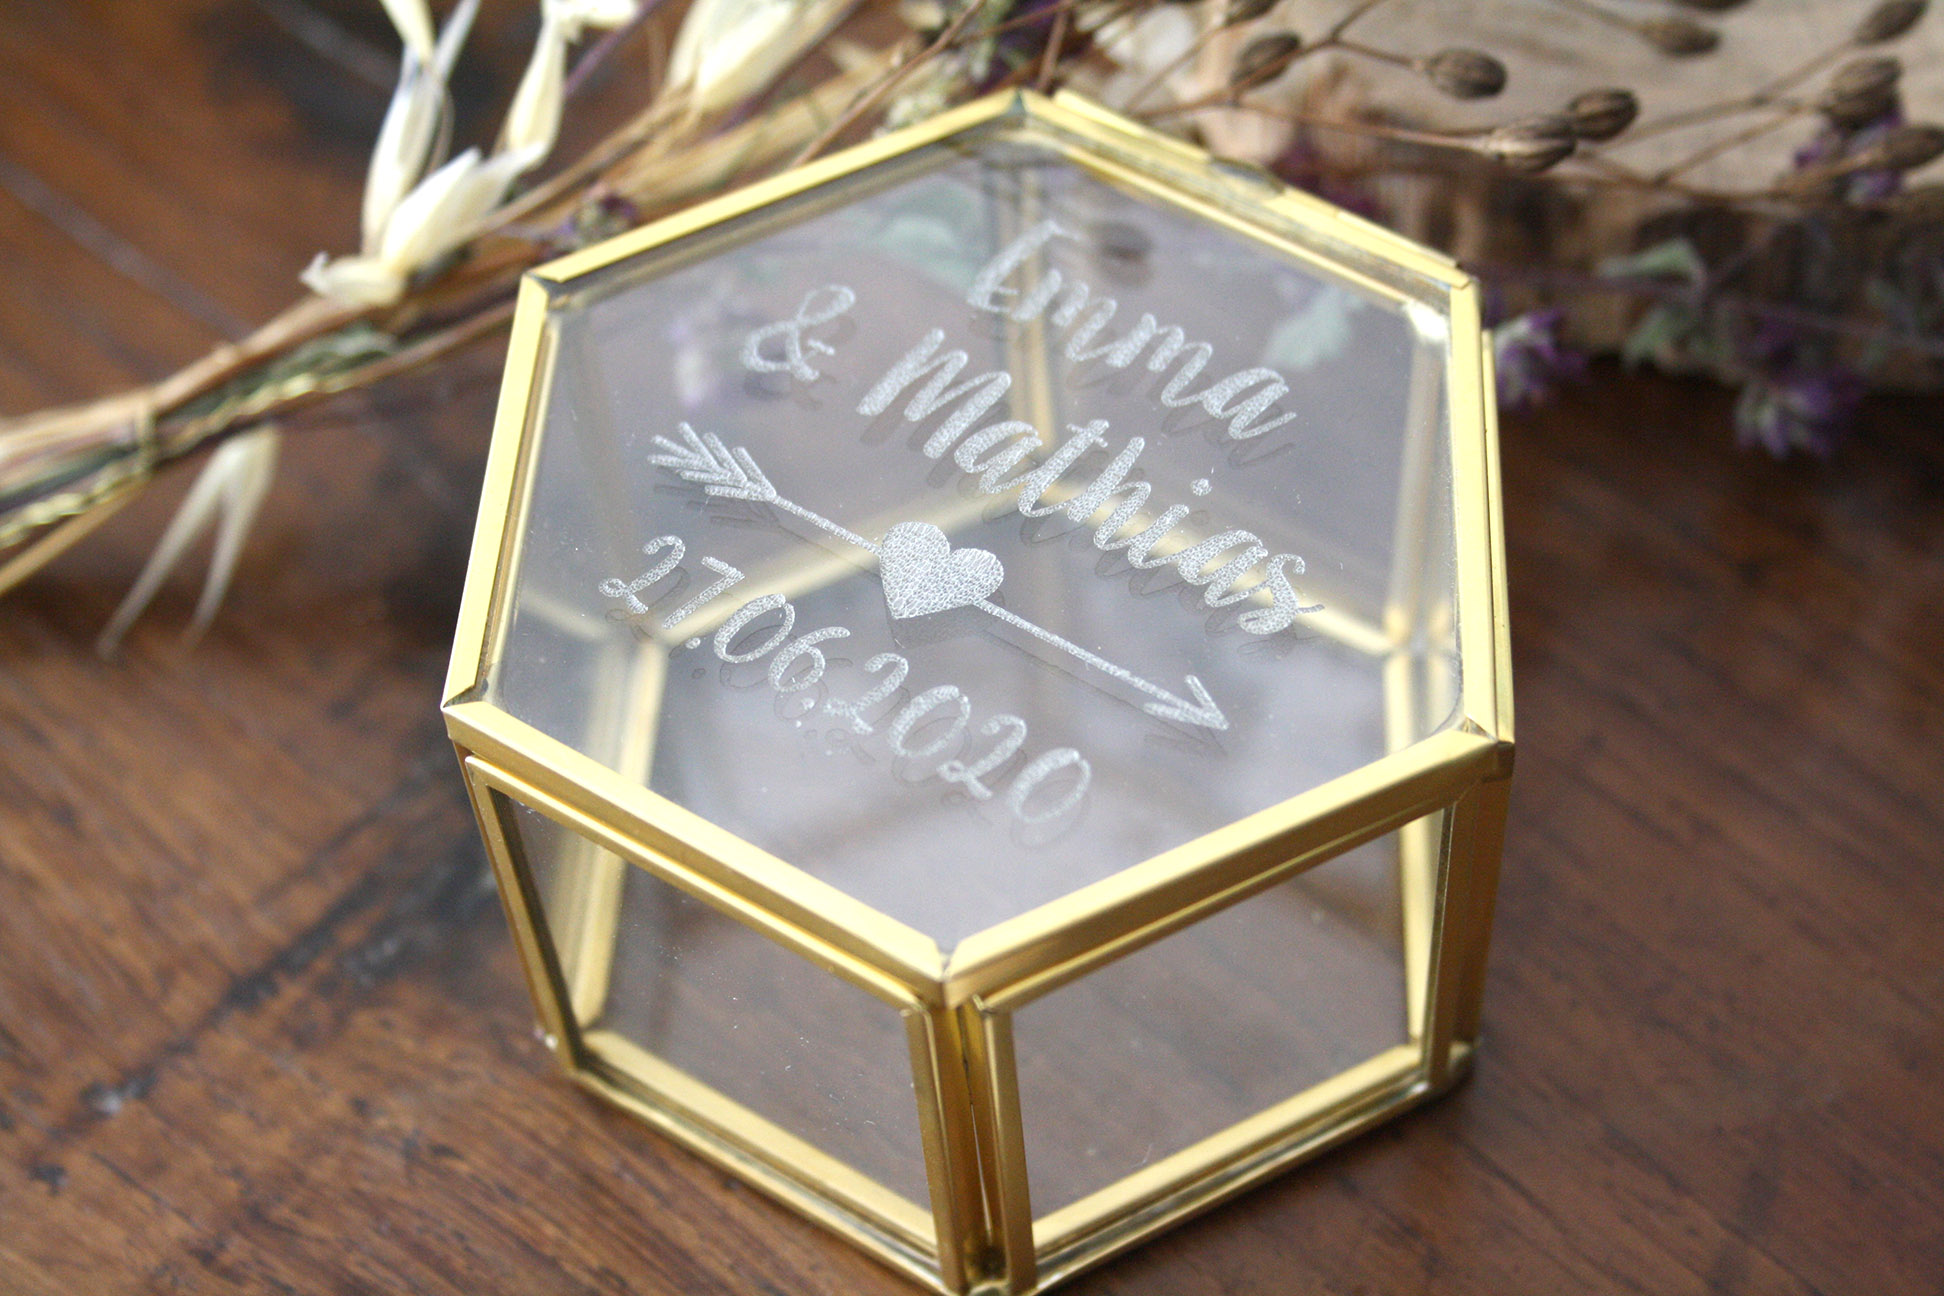 Boîte à alliances en verre et métal doré, personnalisée avec vos prénoms et  date gravés, forme hexagonale, boîte vitrine - Atelier Mumu